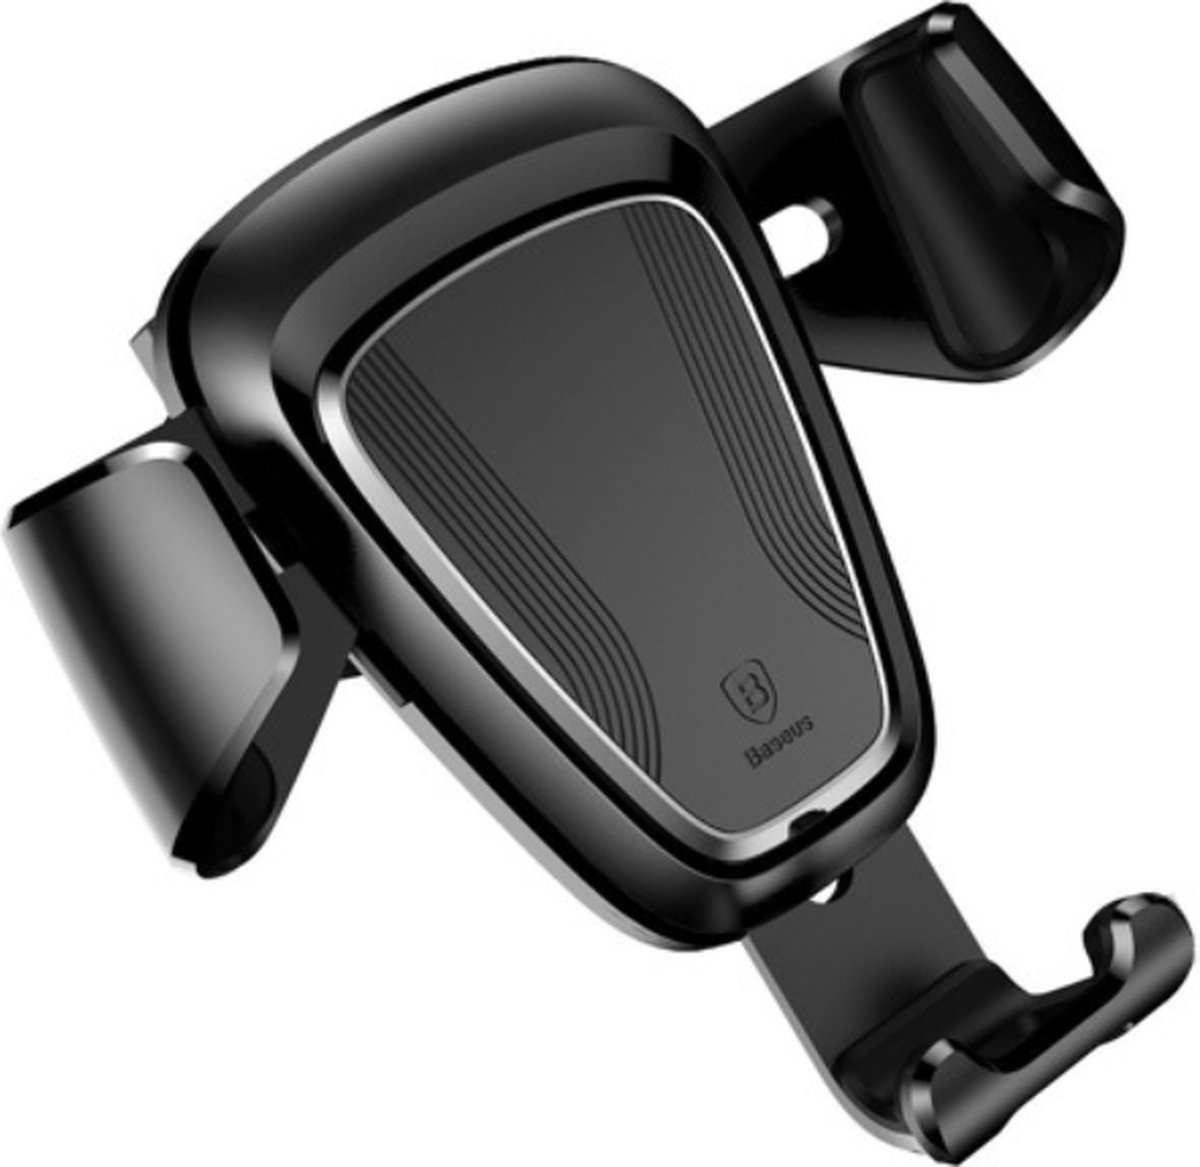 Baseus Gravity Holder - Ventilatie - Rooster - Ventilator - GSM - Mobile Phone Holder Car Air Vent - 4'' tot 6'' inch - Geschikt voor iPhone - Asus - Sony Xperia - Nokia - Samsung - Zwart SUYL-01